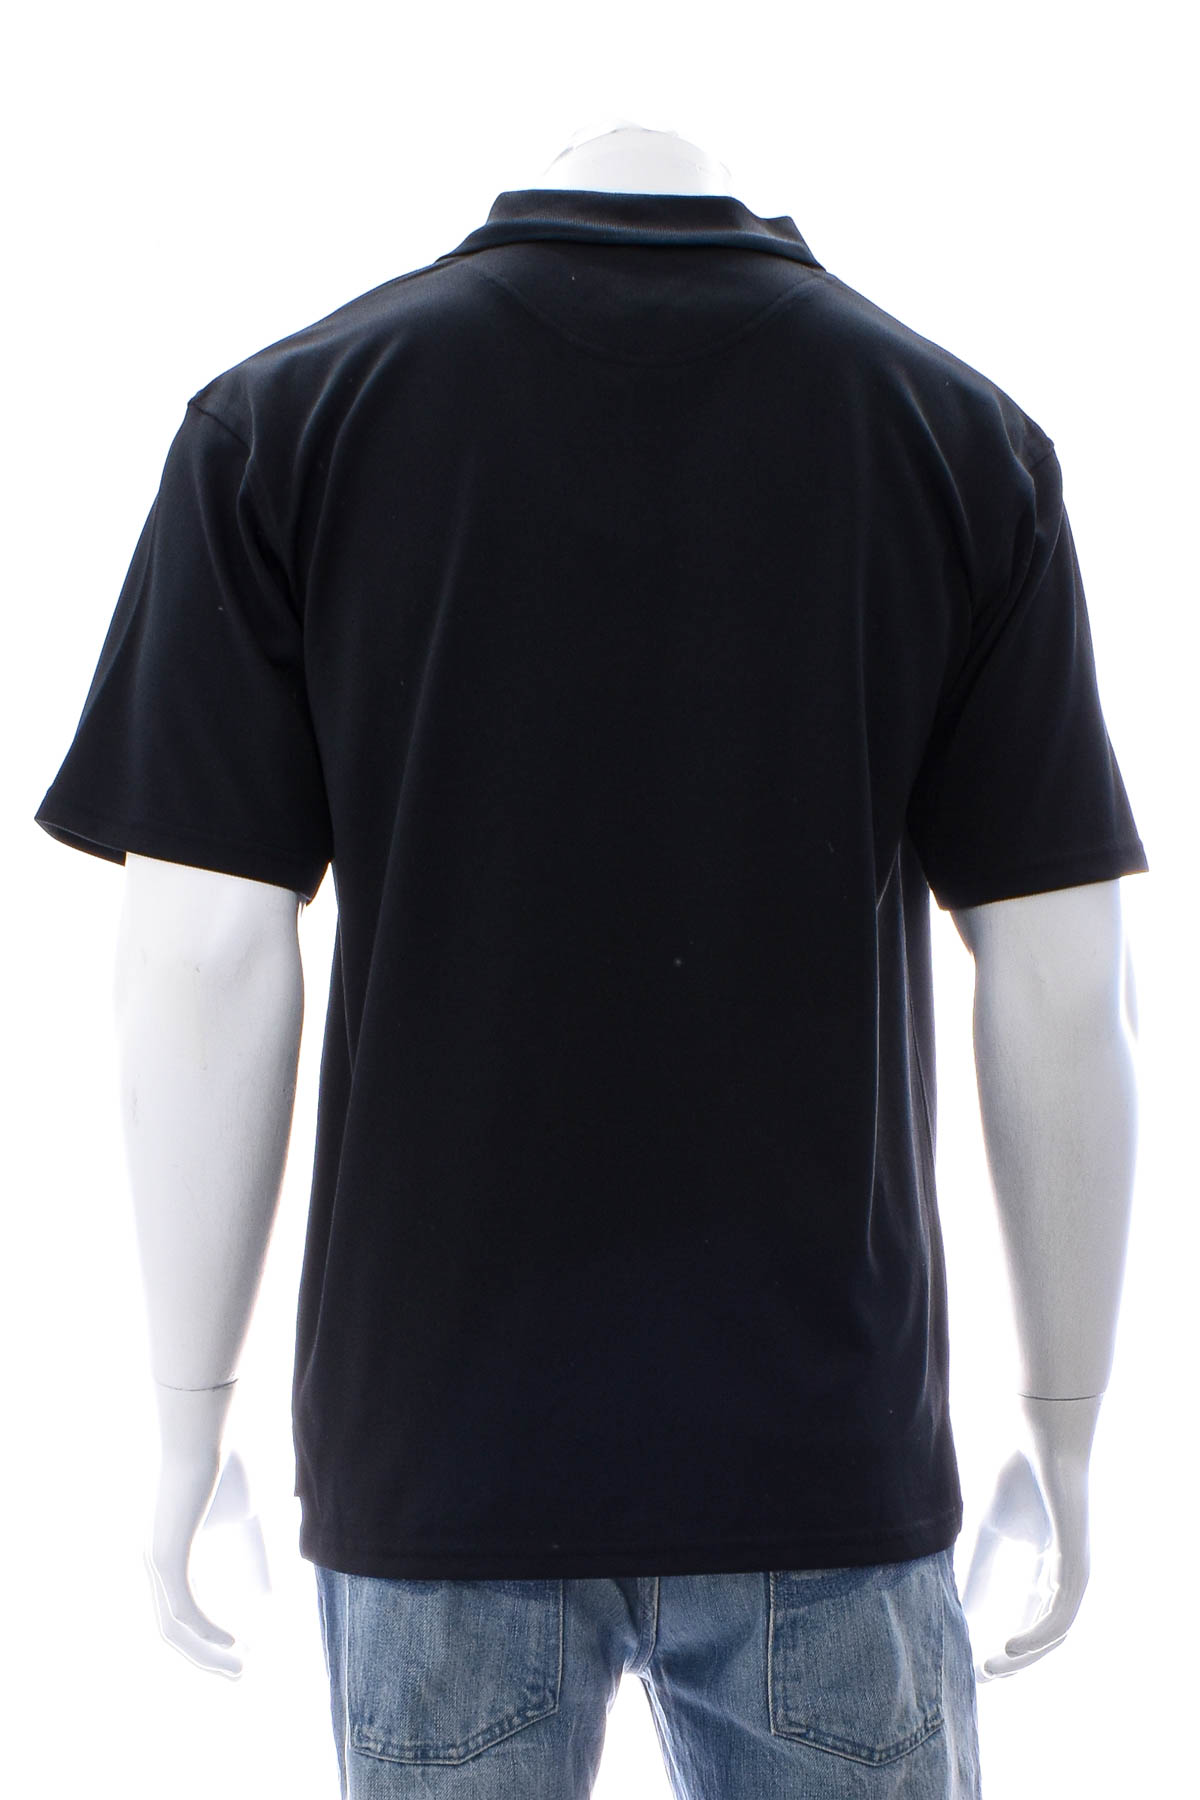 Αντρική μπλούζα - Henbury - 1